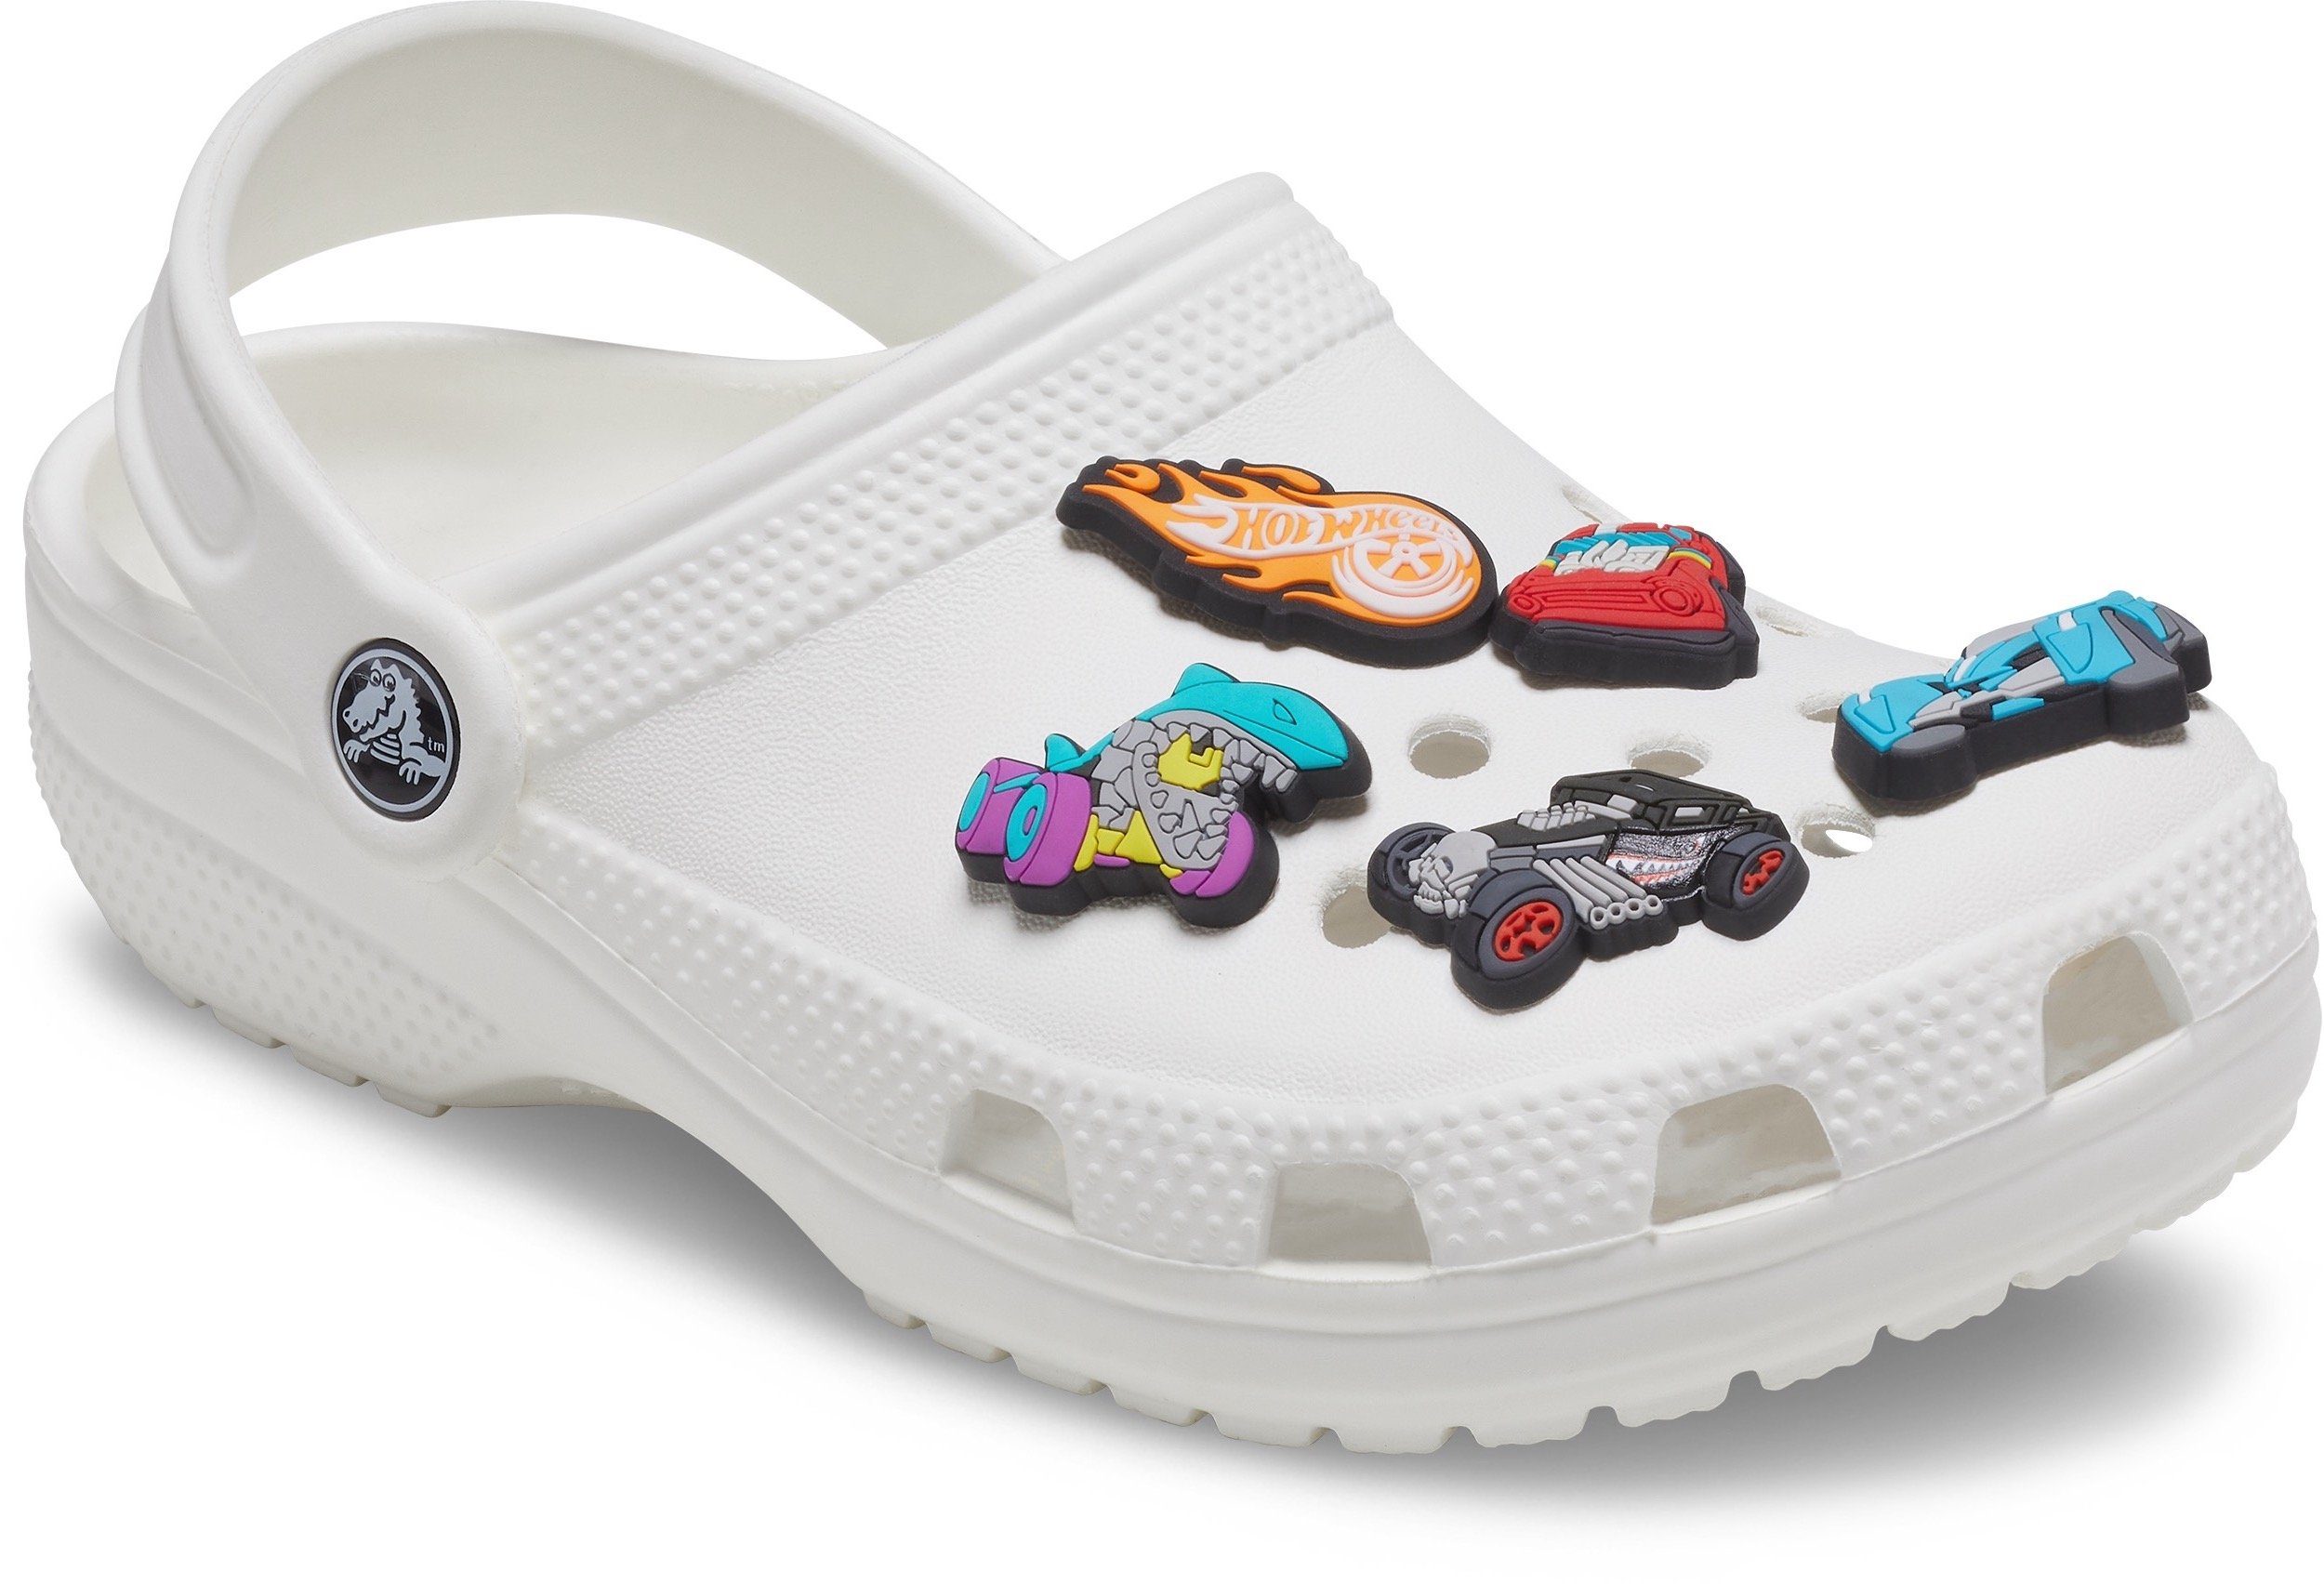 Kein Schuhanstecker für Kinder für geeignet), (Set, 5-tlg., Spielzeug. Jibbitz™ 3 Wheels Crocs Jahren unter Nicht Schuhe Hot Crocs